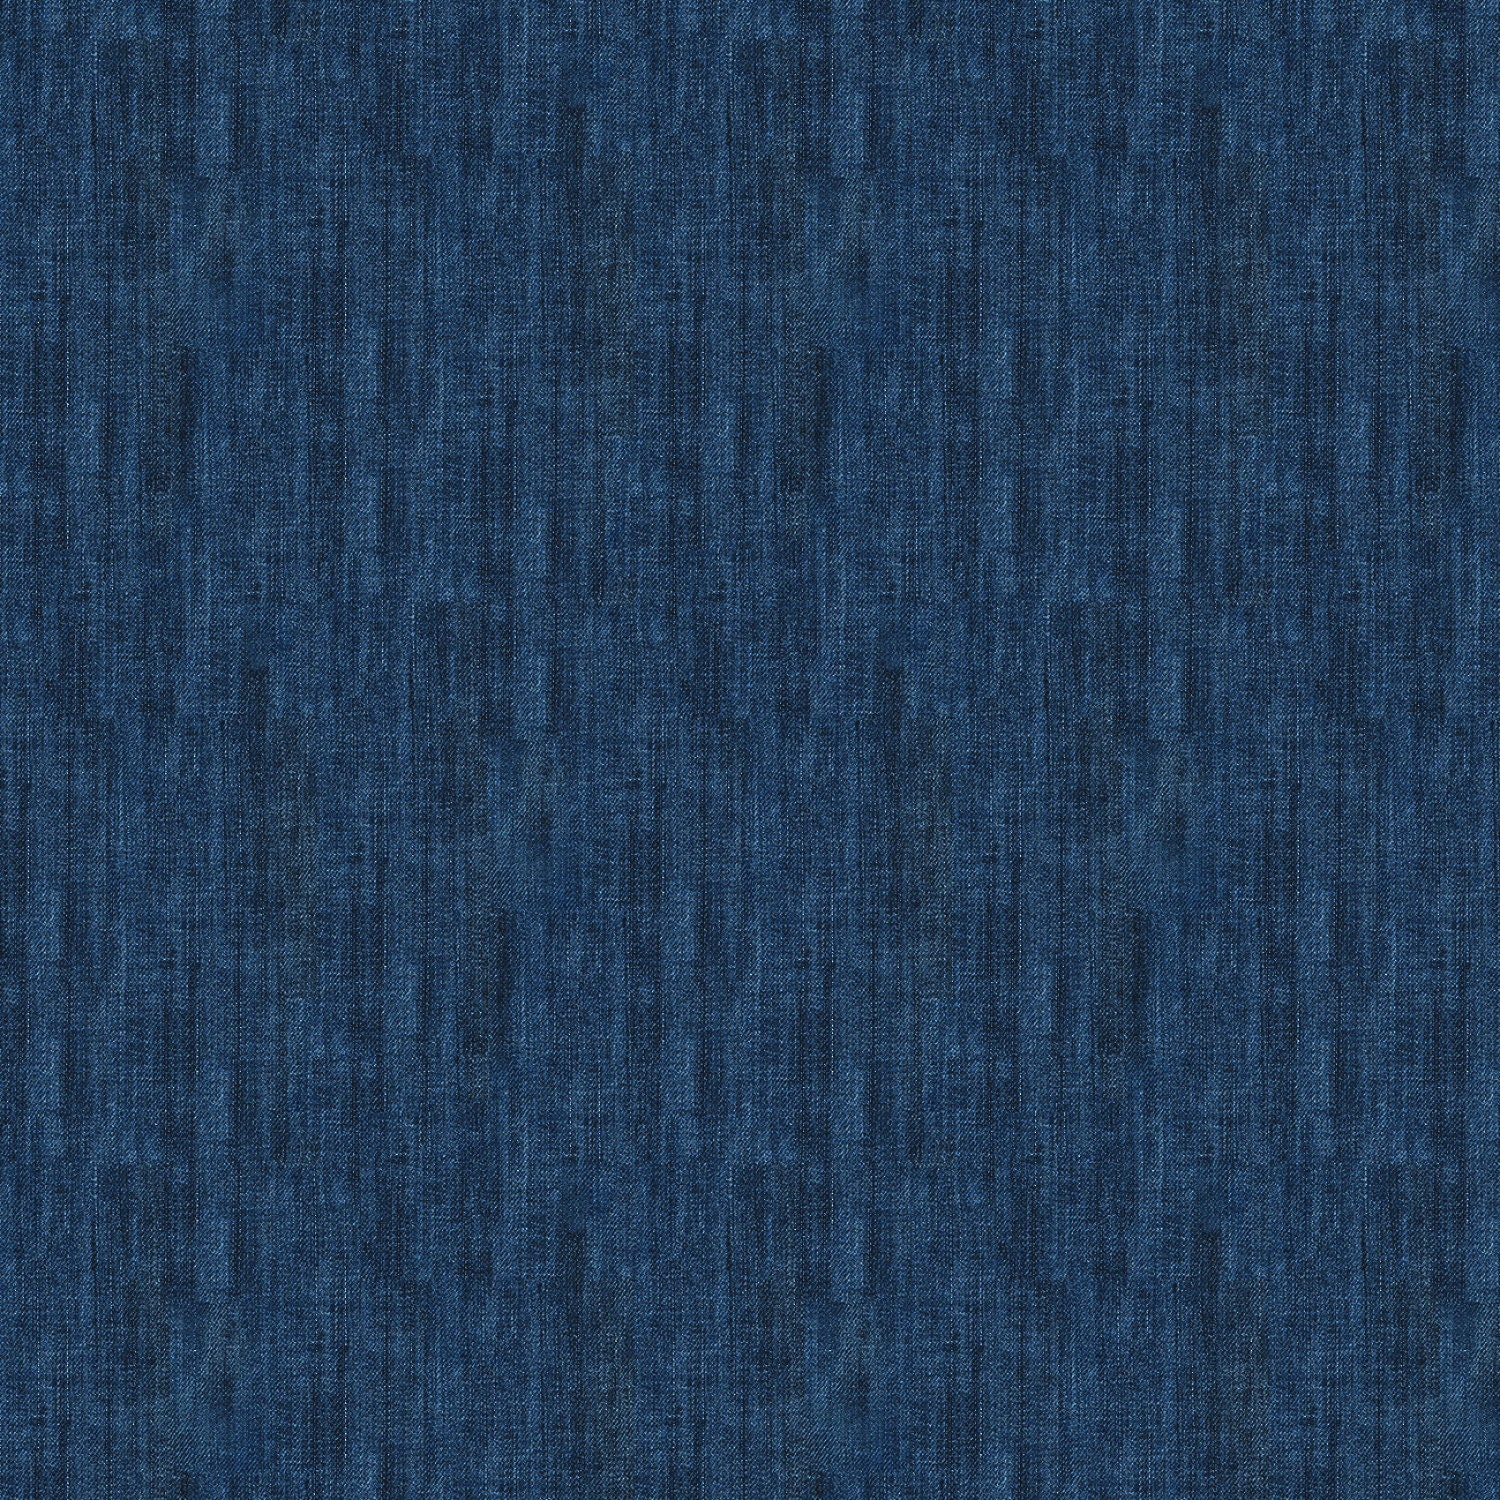 blue lv fabric such as denim louis vuitton denim fabric blue